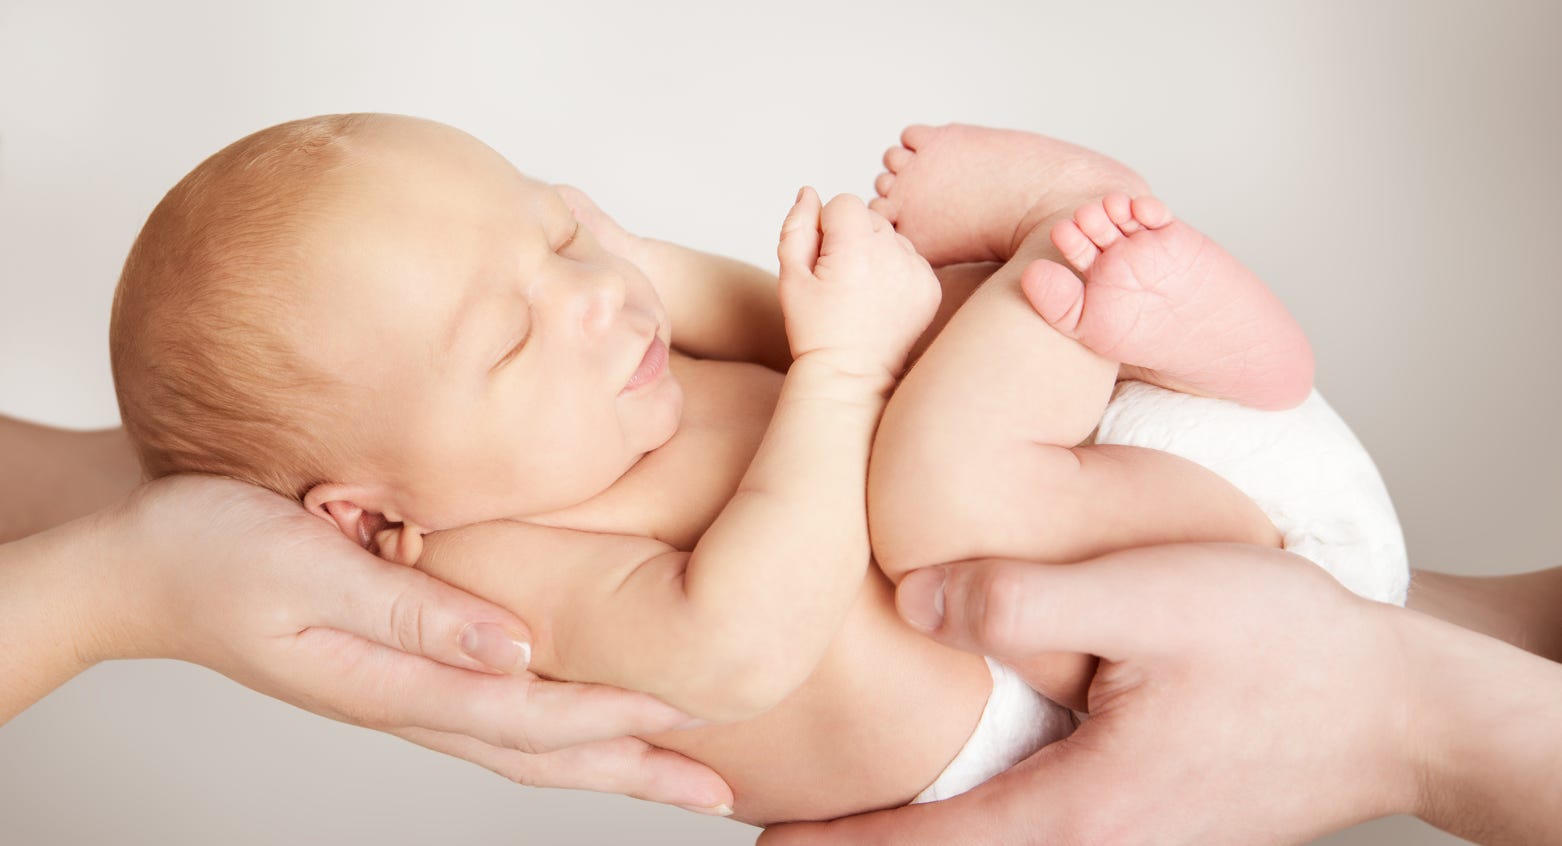 Säugling wird liebevoll in den Händen gehalten - Wohlfühlen - Geborgenheit © Adobe Stock: inarik